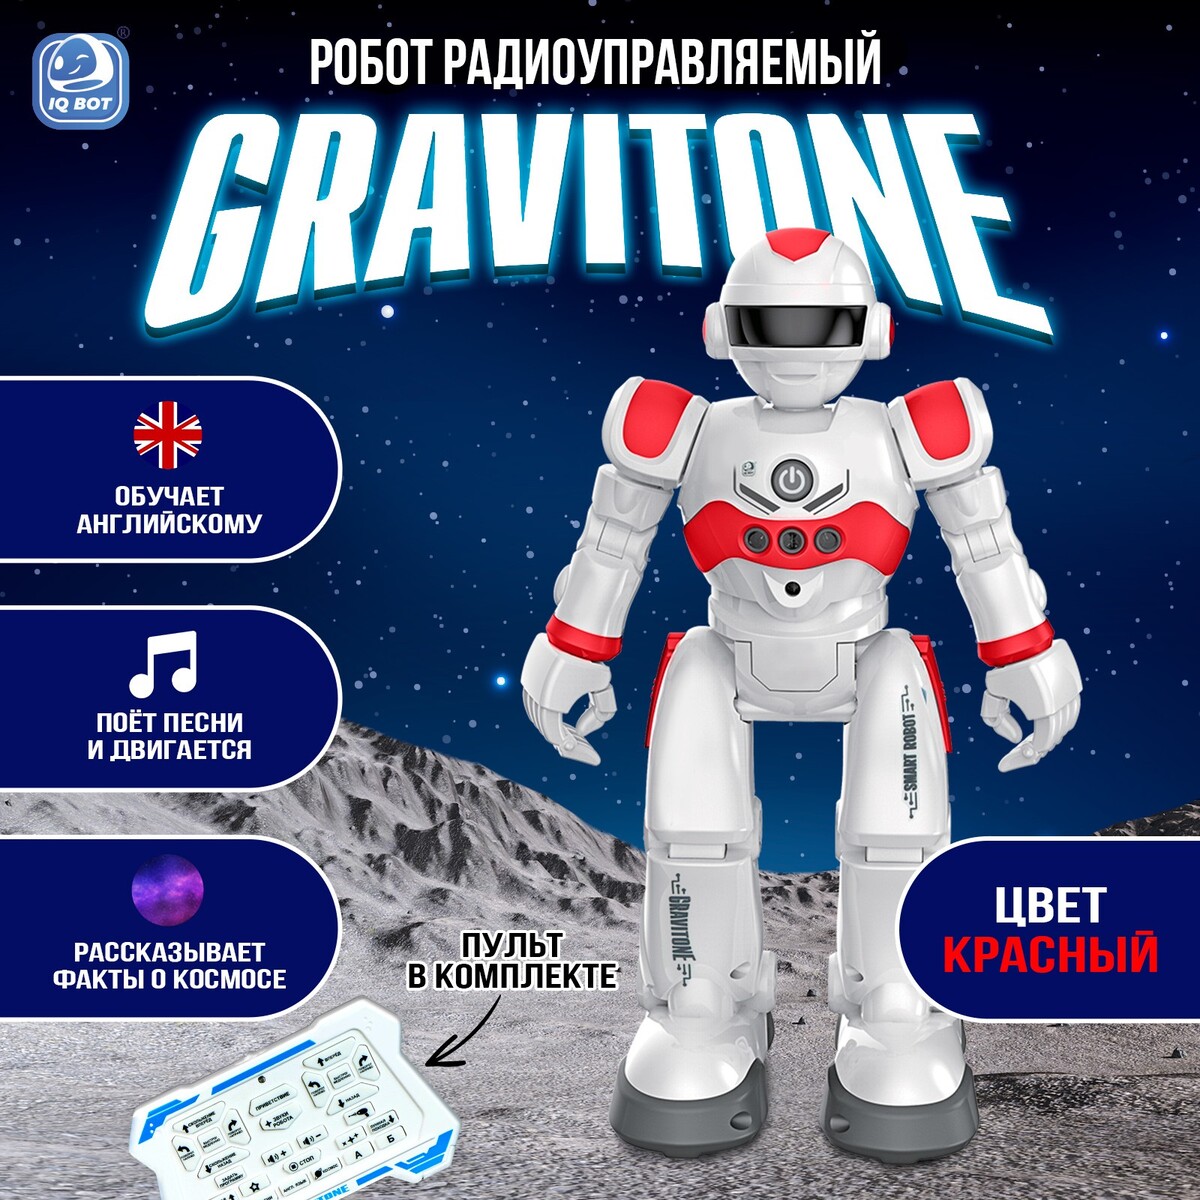 Робот радиоуправляемый iq bot gravitone, русское озвучивание, цвет красный эстонско русское культурное пространство